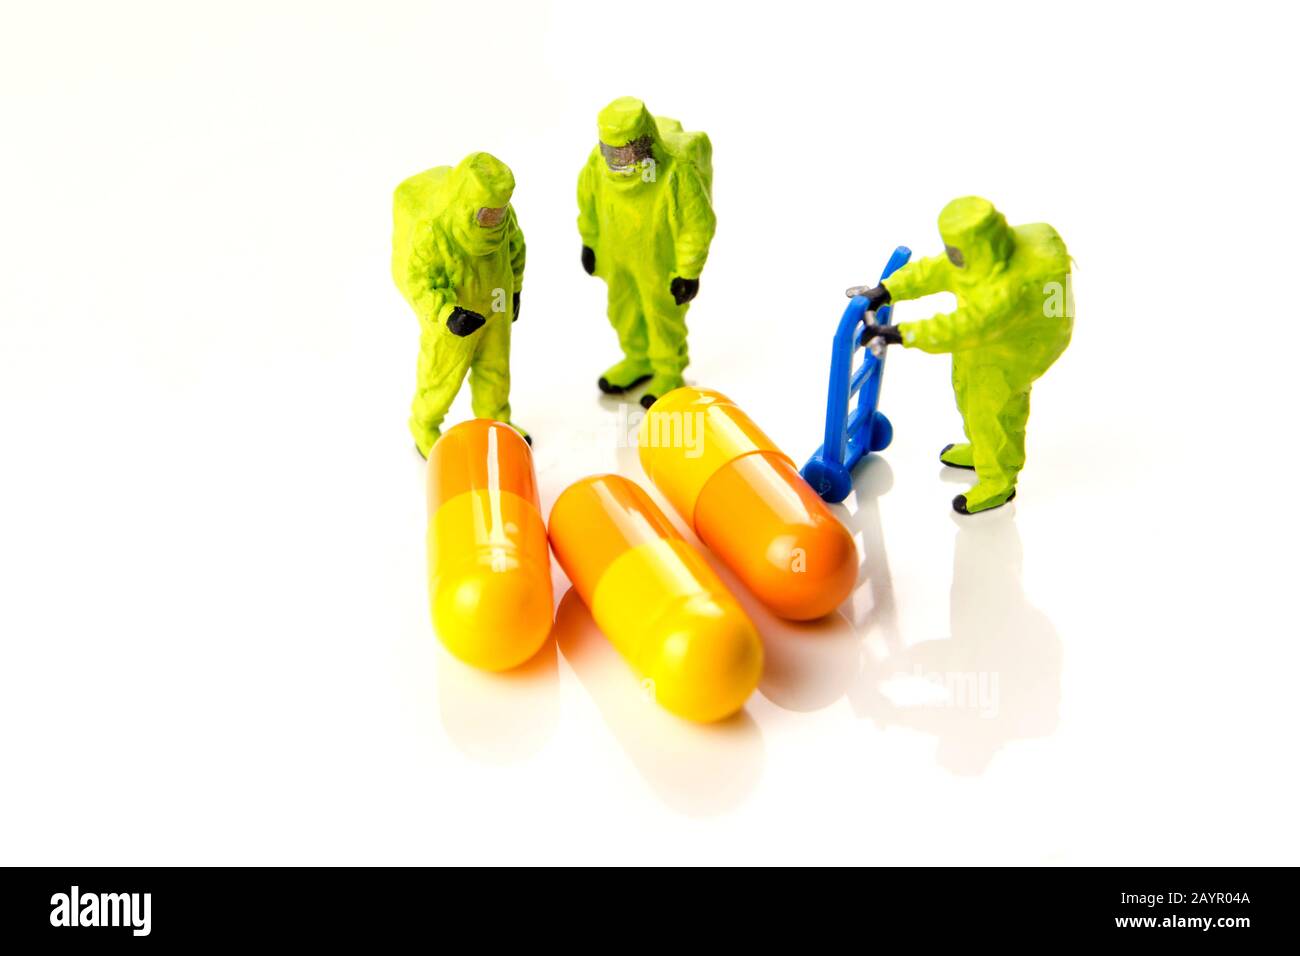 Nahaufnahme des großen Corona-Virus mit einem Team von Spezialeinsatzkräften Miniaturfiguren, die sich bei Gas- und anderen Chemieunfällen störten, so das Team pr Stockfoto